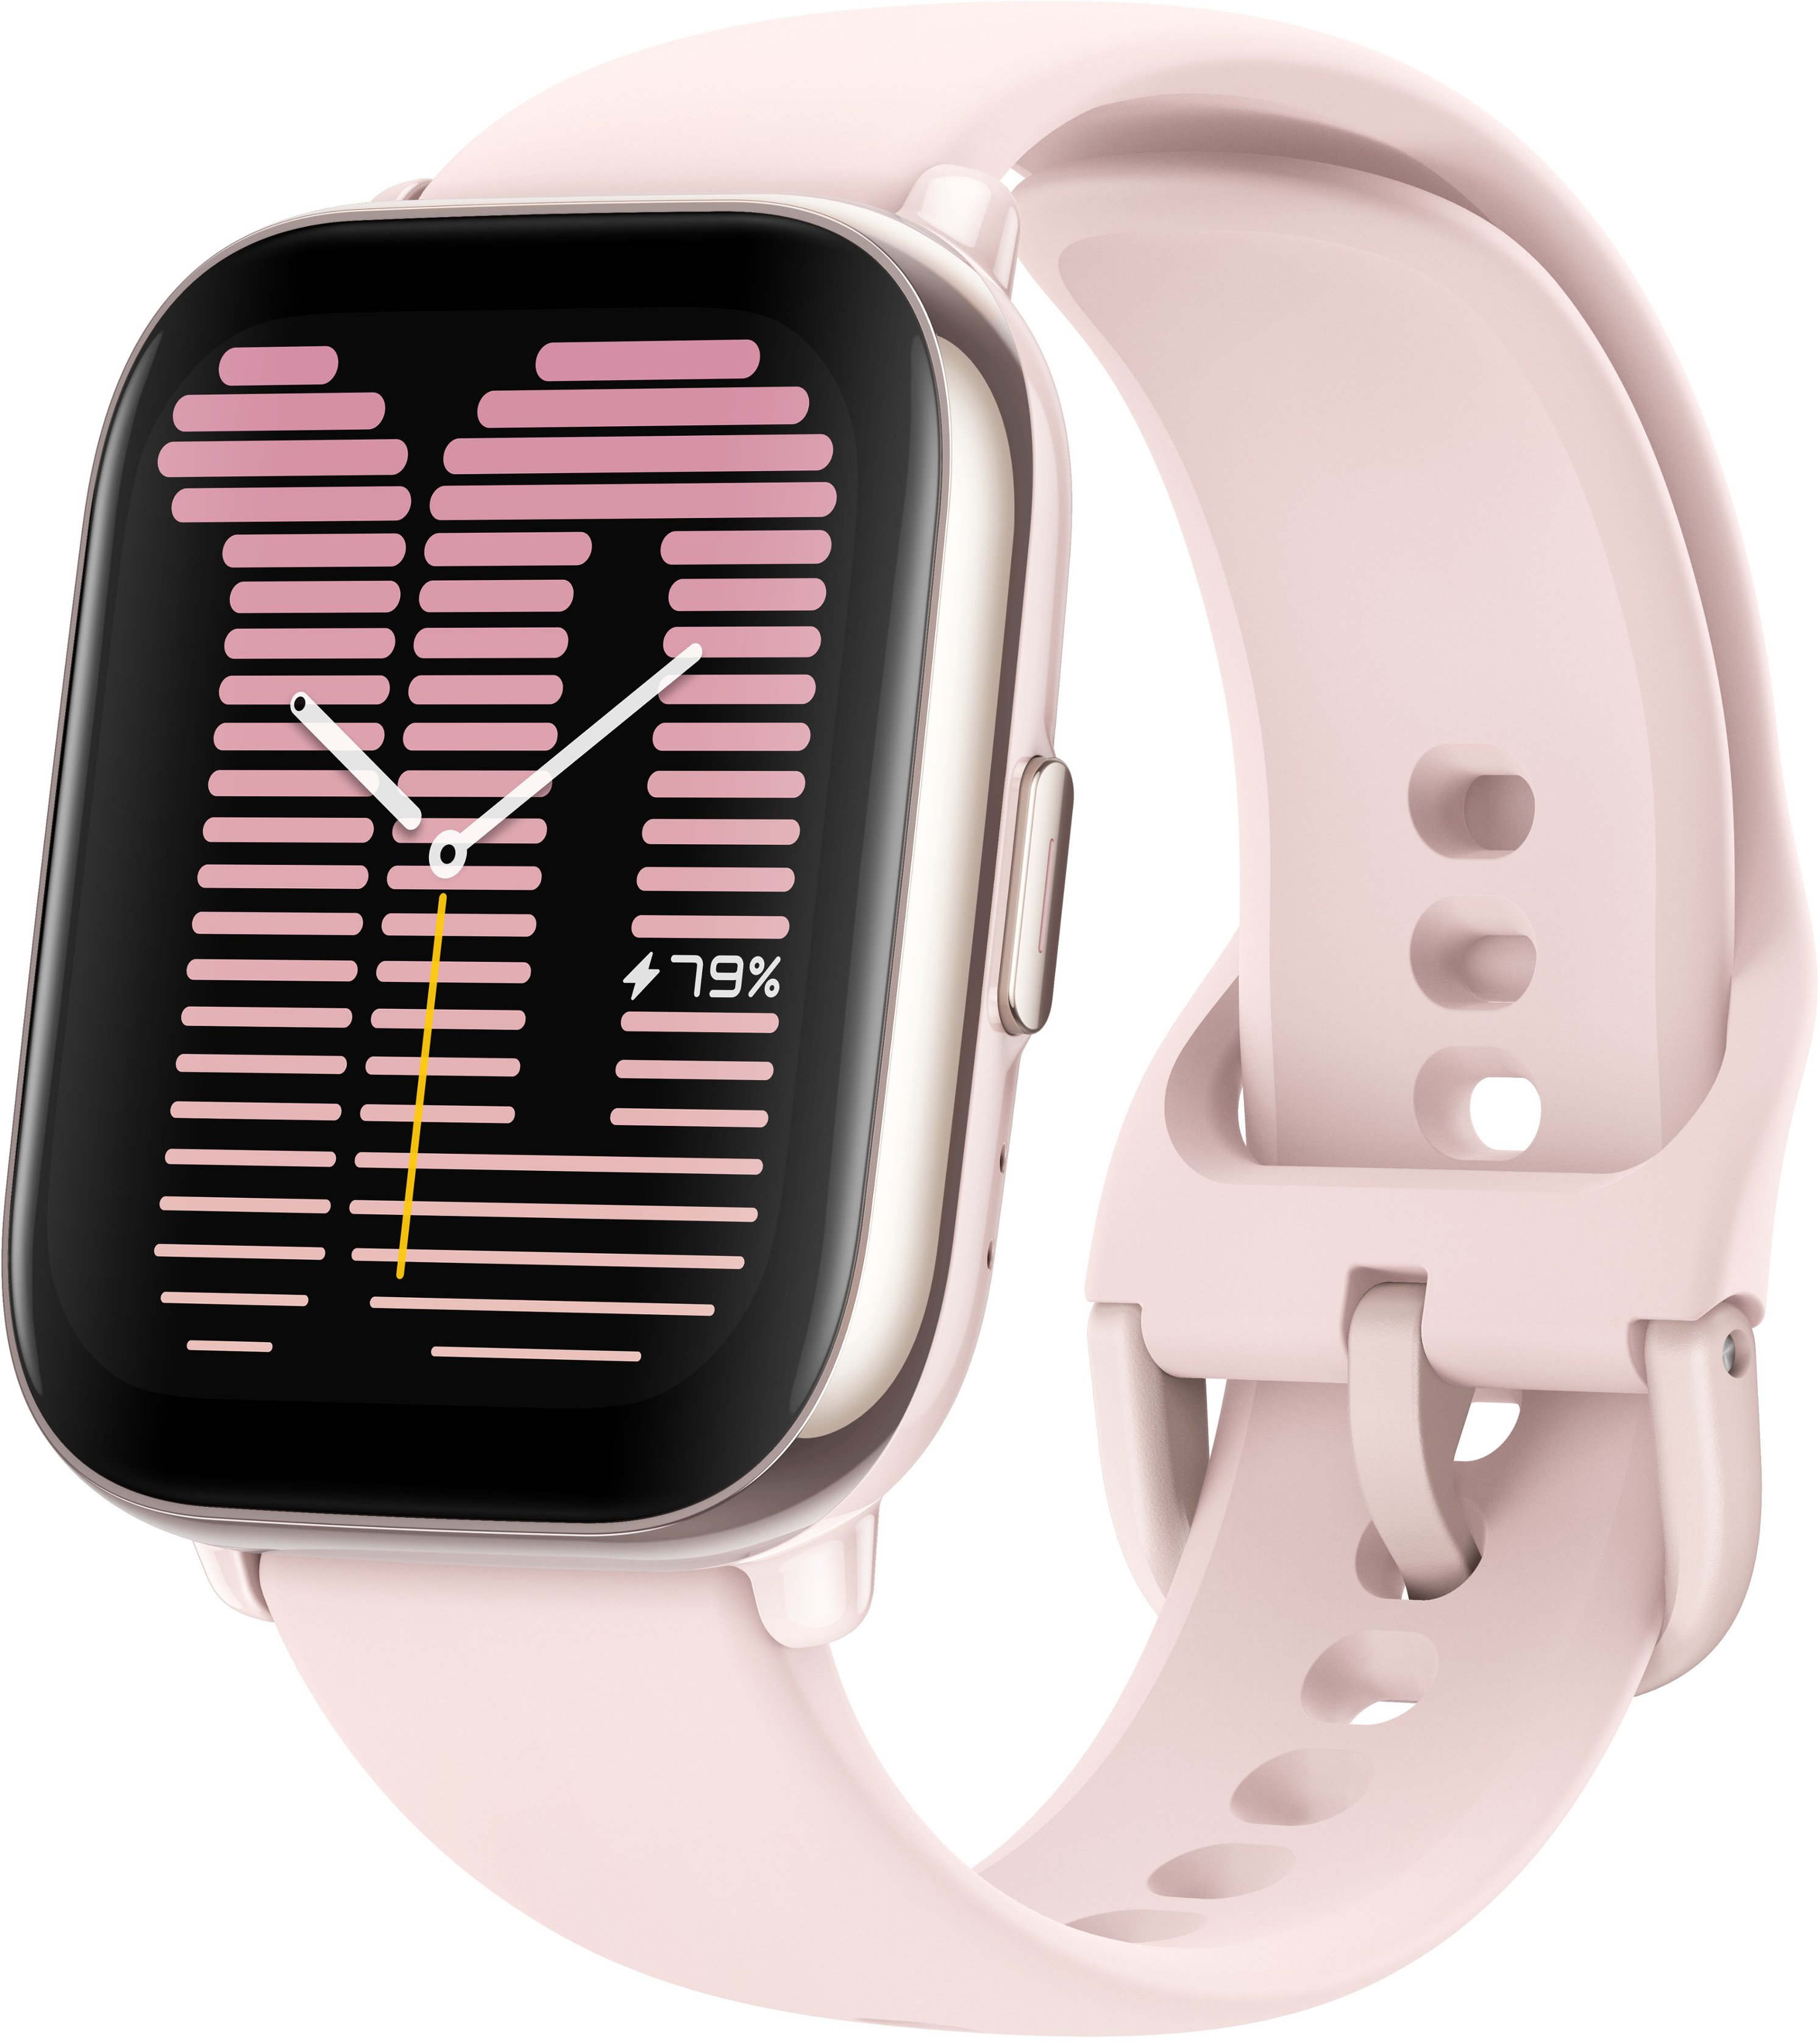 Next Buy Shop - Relógio Xiaomi Mi Band 5